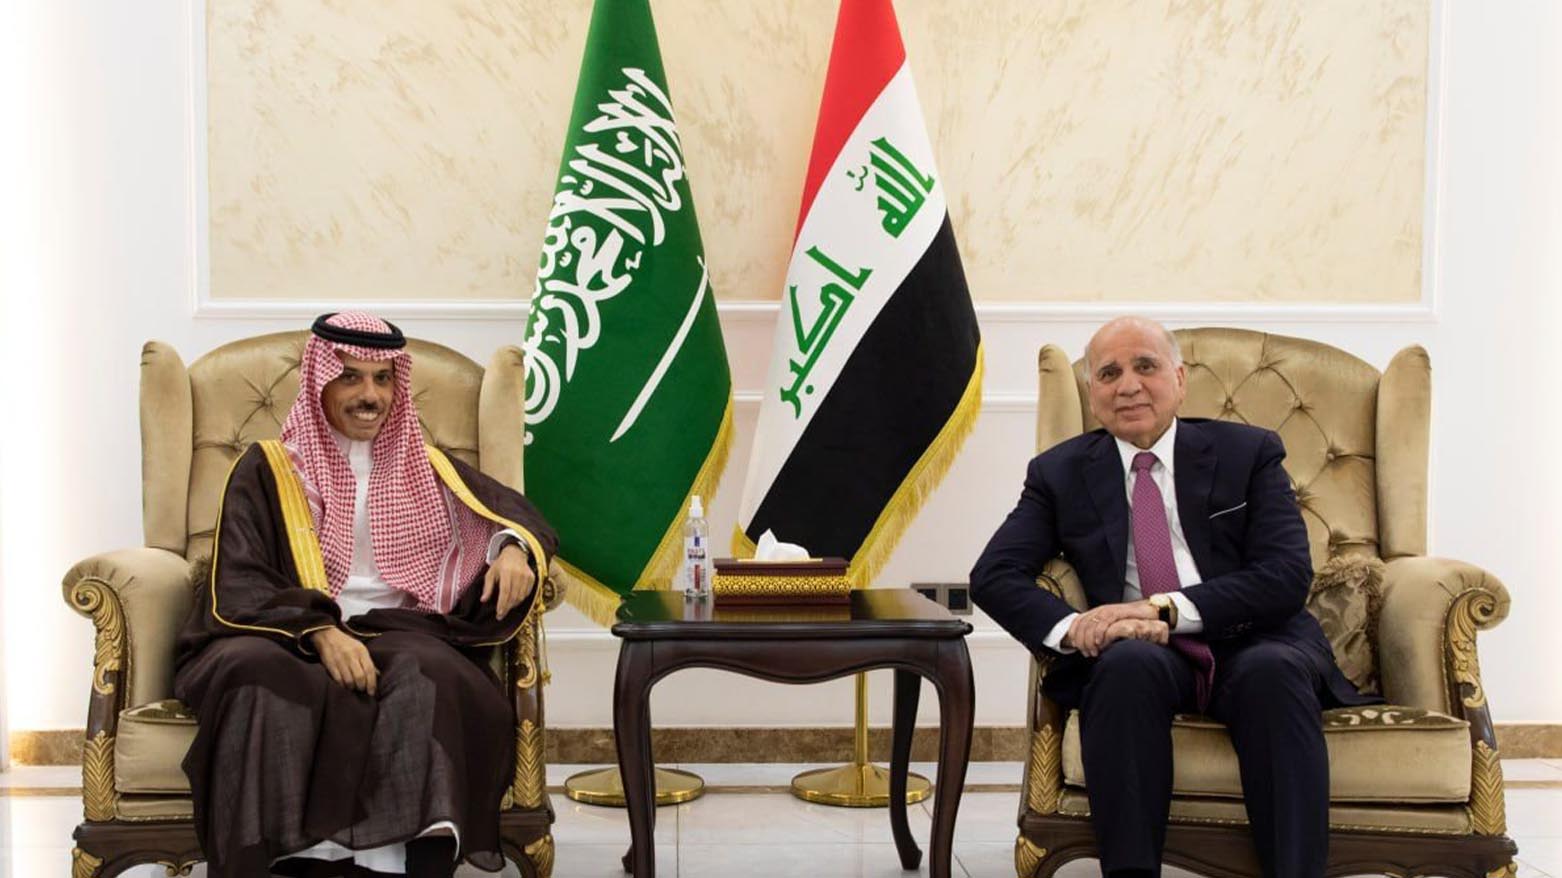 فواد حسین، وزیر امور خارجه عراق و فیصل بن فرحان، وزیر امور خارجه عربستان سعودی